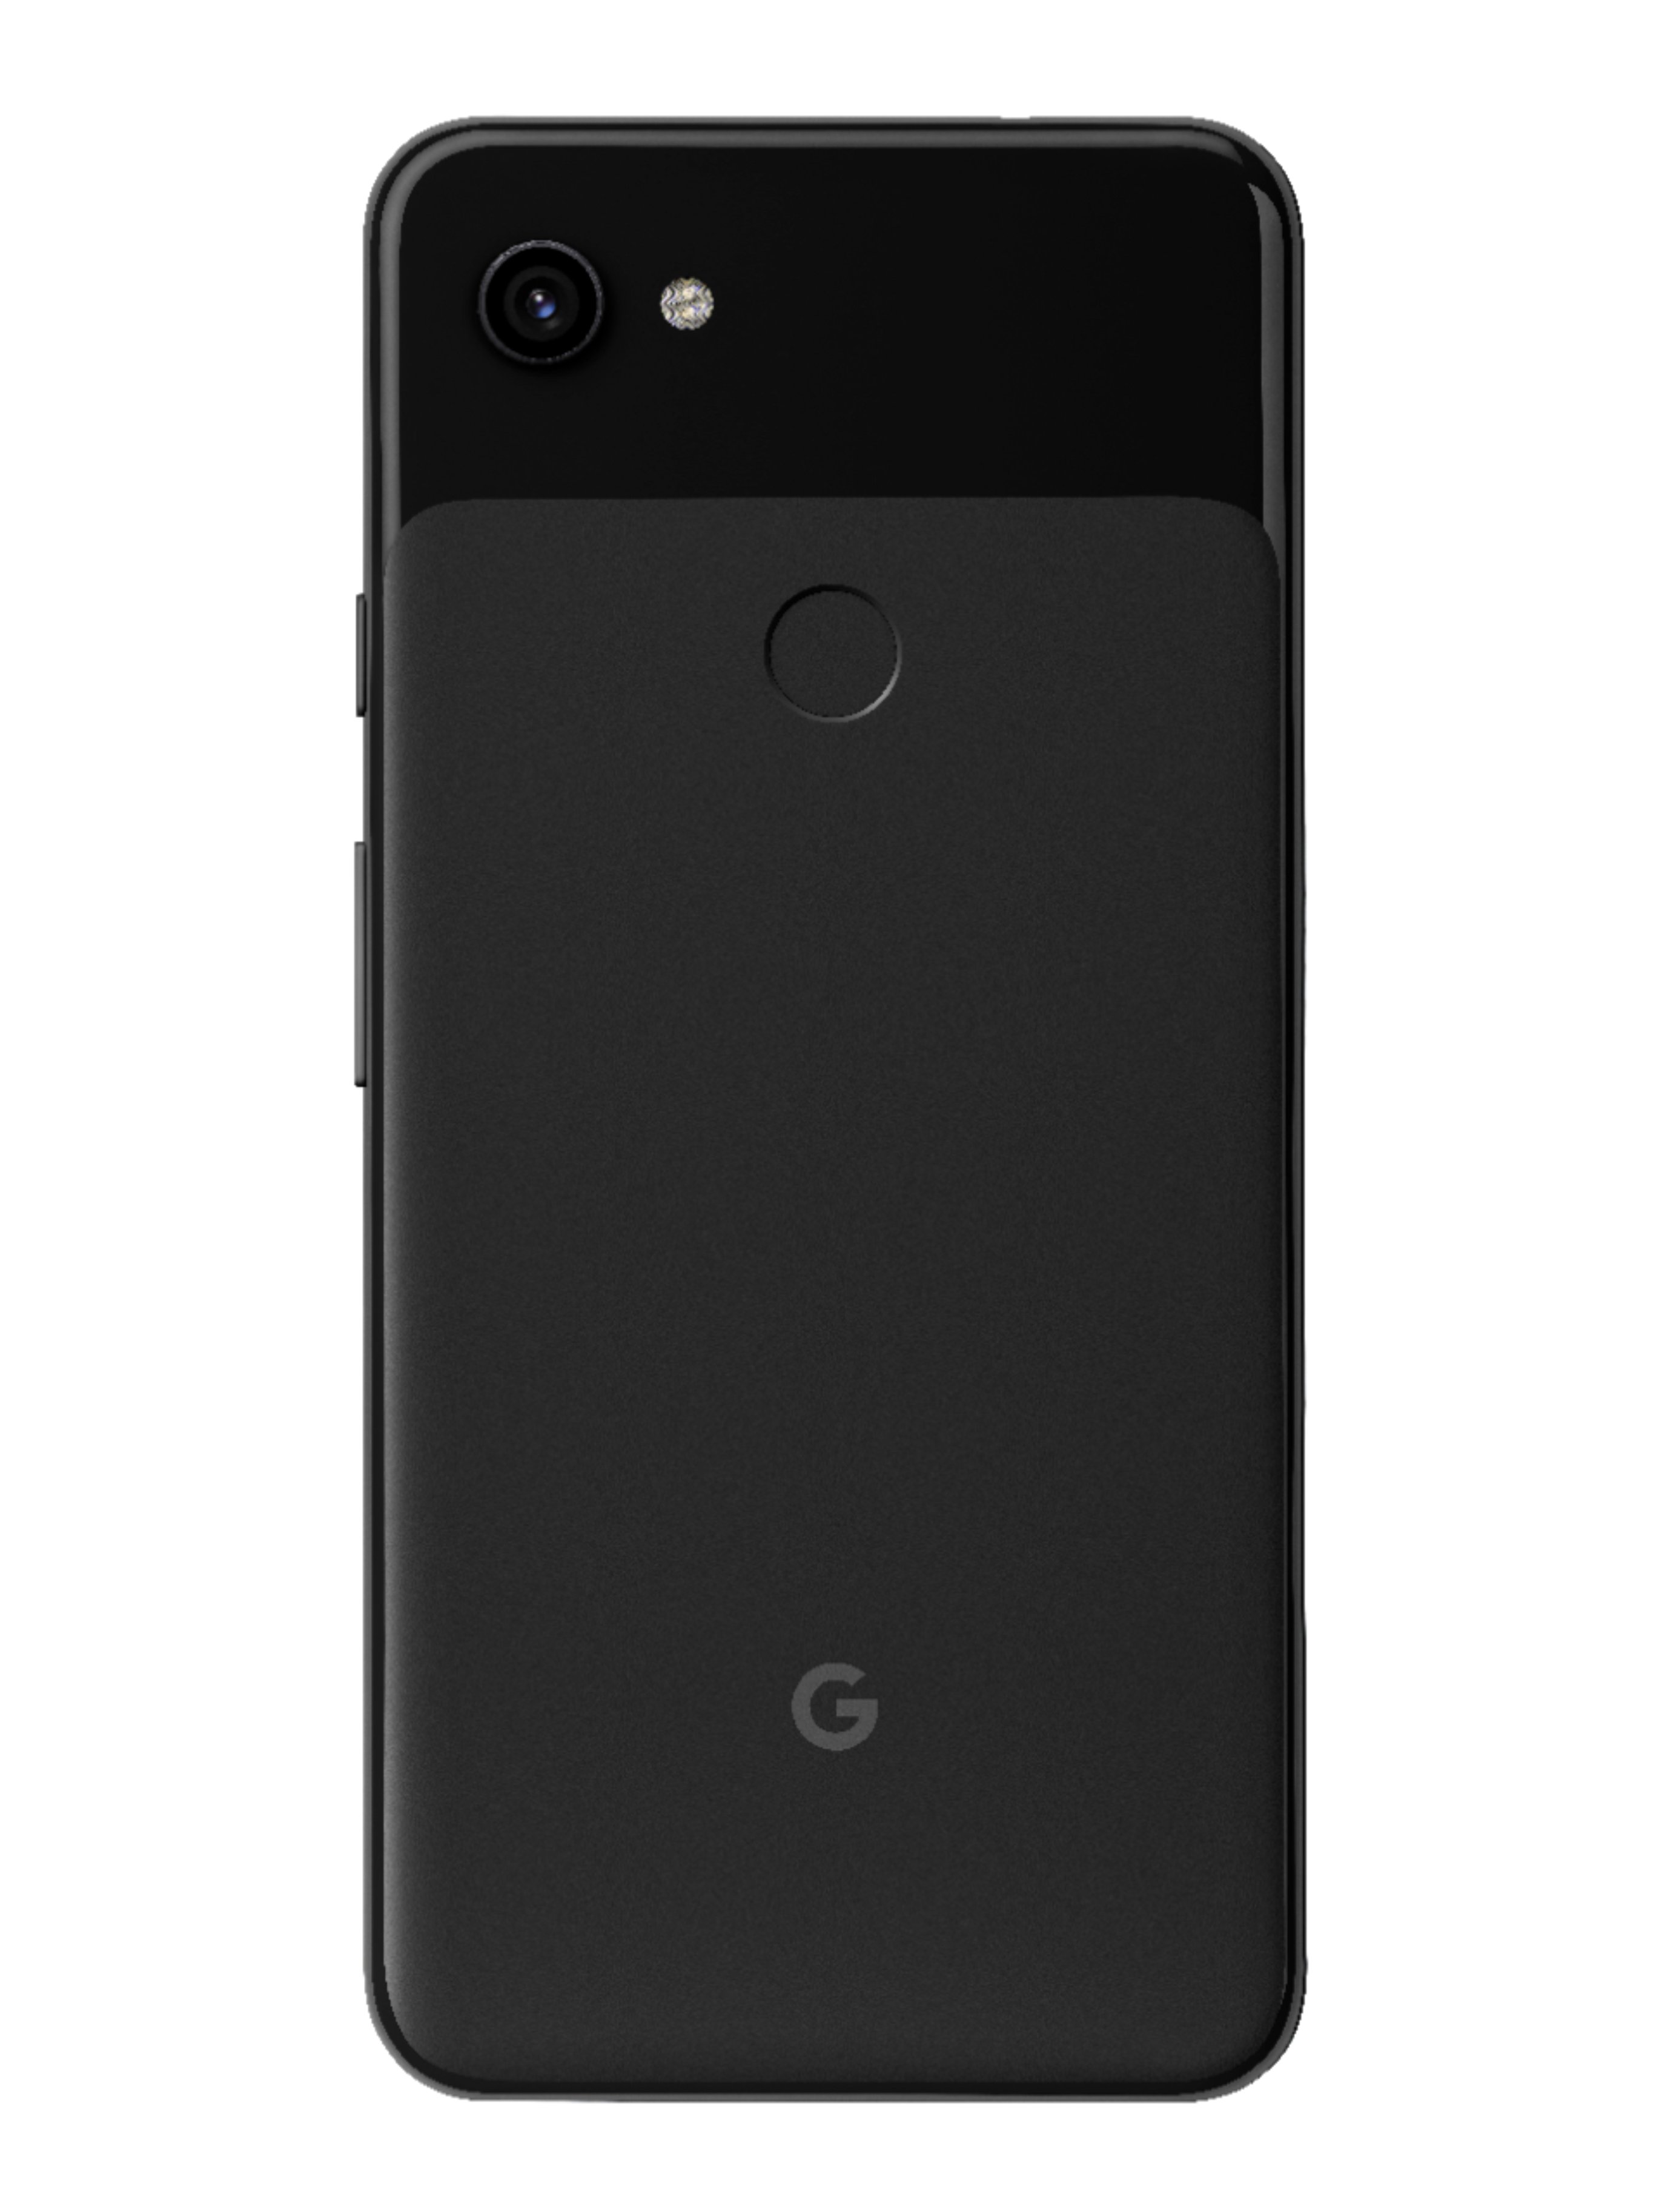 Unlocked Google Pixel 3a Black Smartphone Bundle for sale online